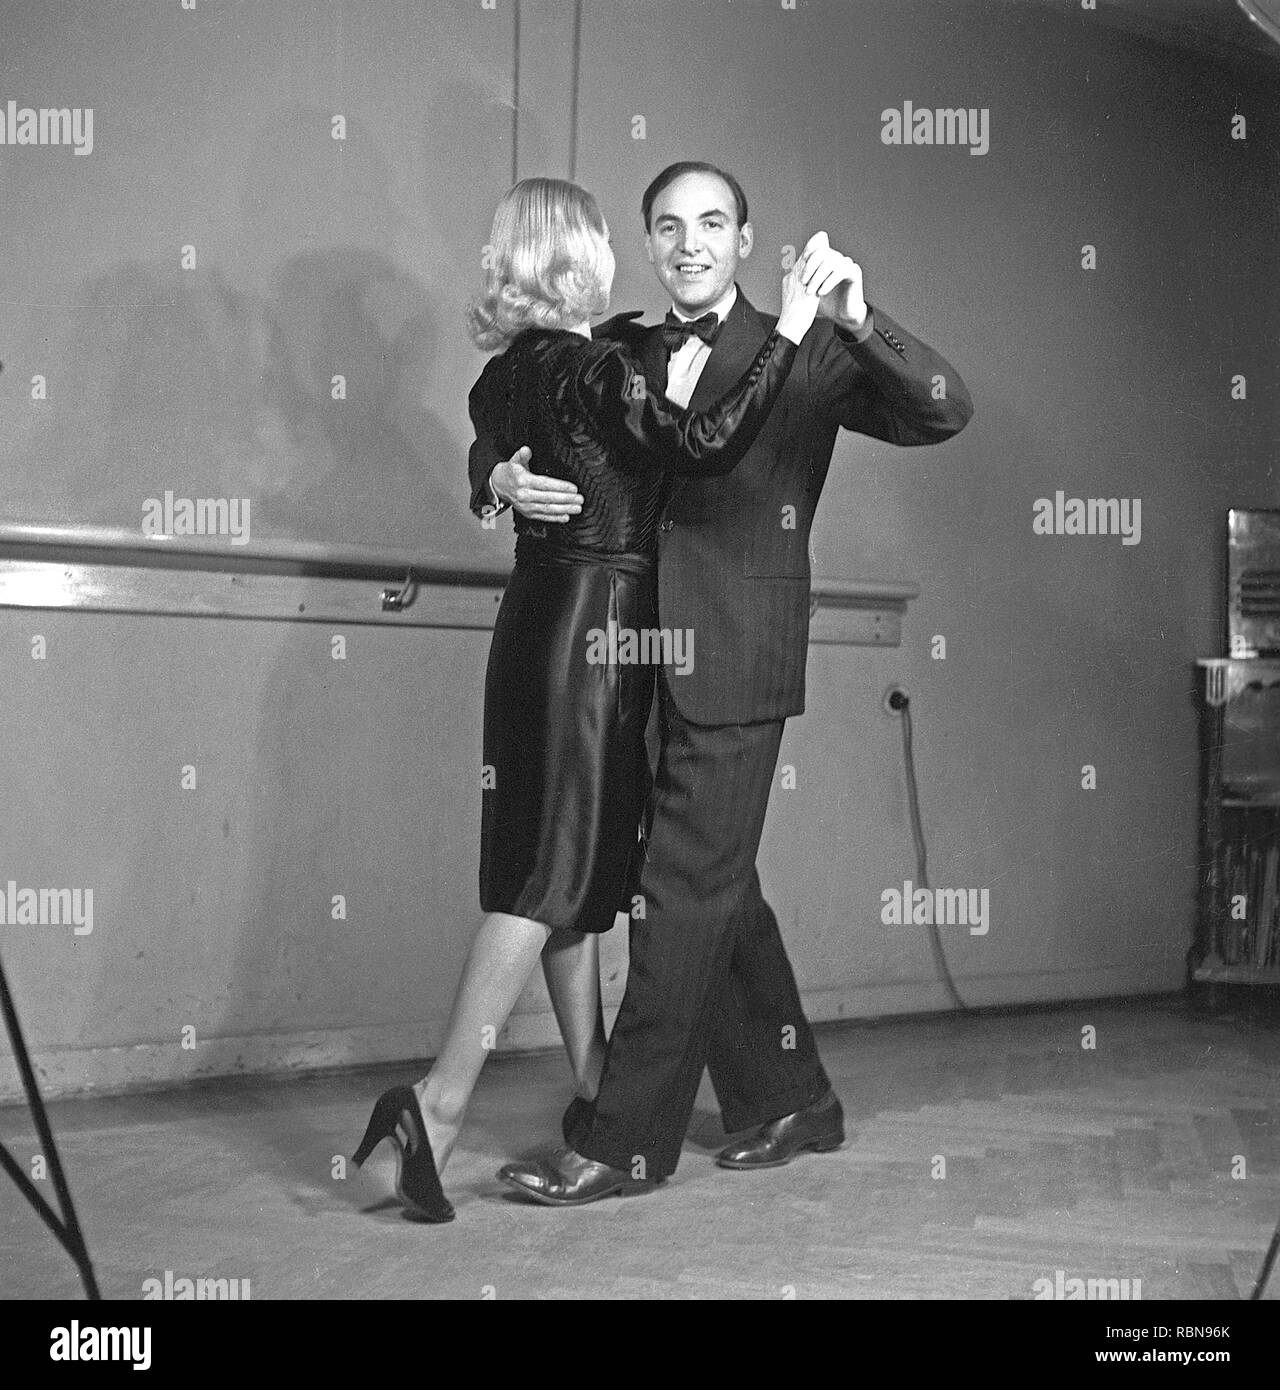 Tanz in den 1940er Jahren. Ein Tanzpaar in den 1940er Jahren. Die elegante Paar sind Ausbildung ihren Tanzschritten an einem Tanz Schule. Foto Kristoffersson Ref B3-3. Schweden 1943 Stockfoto